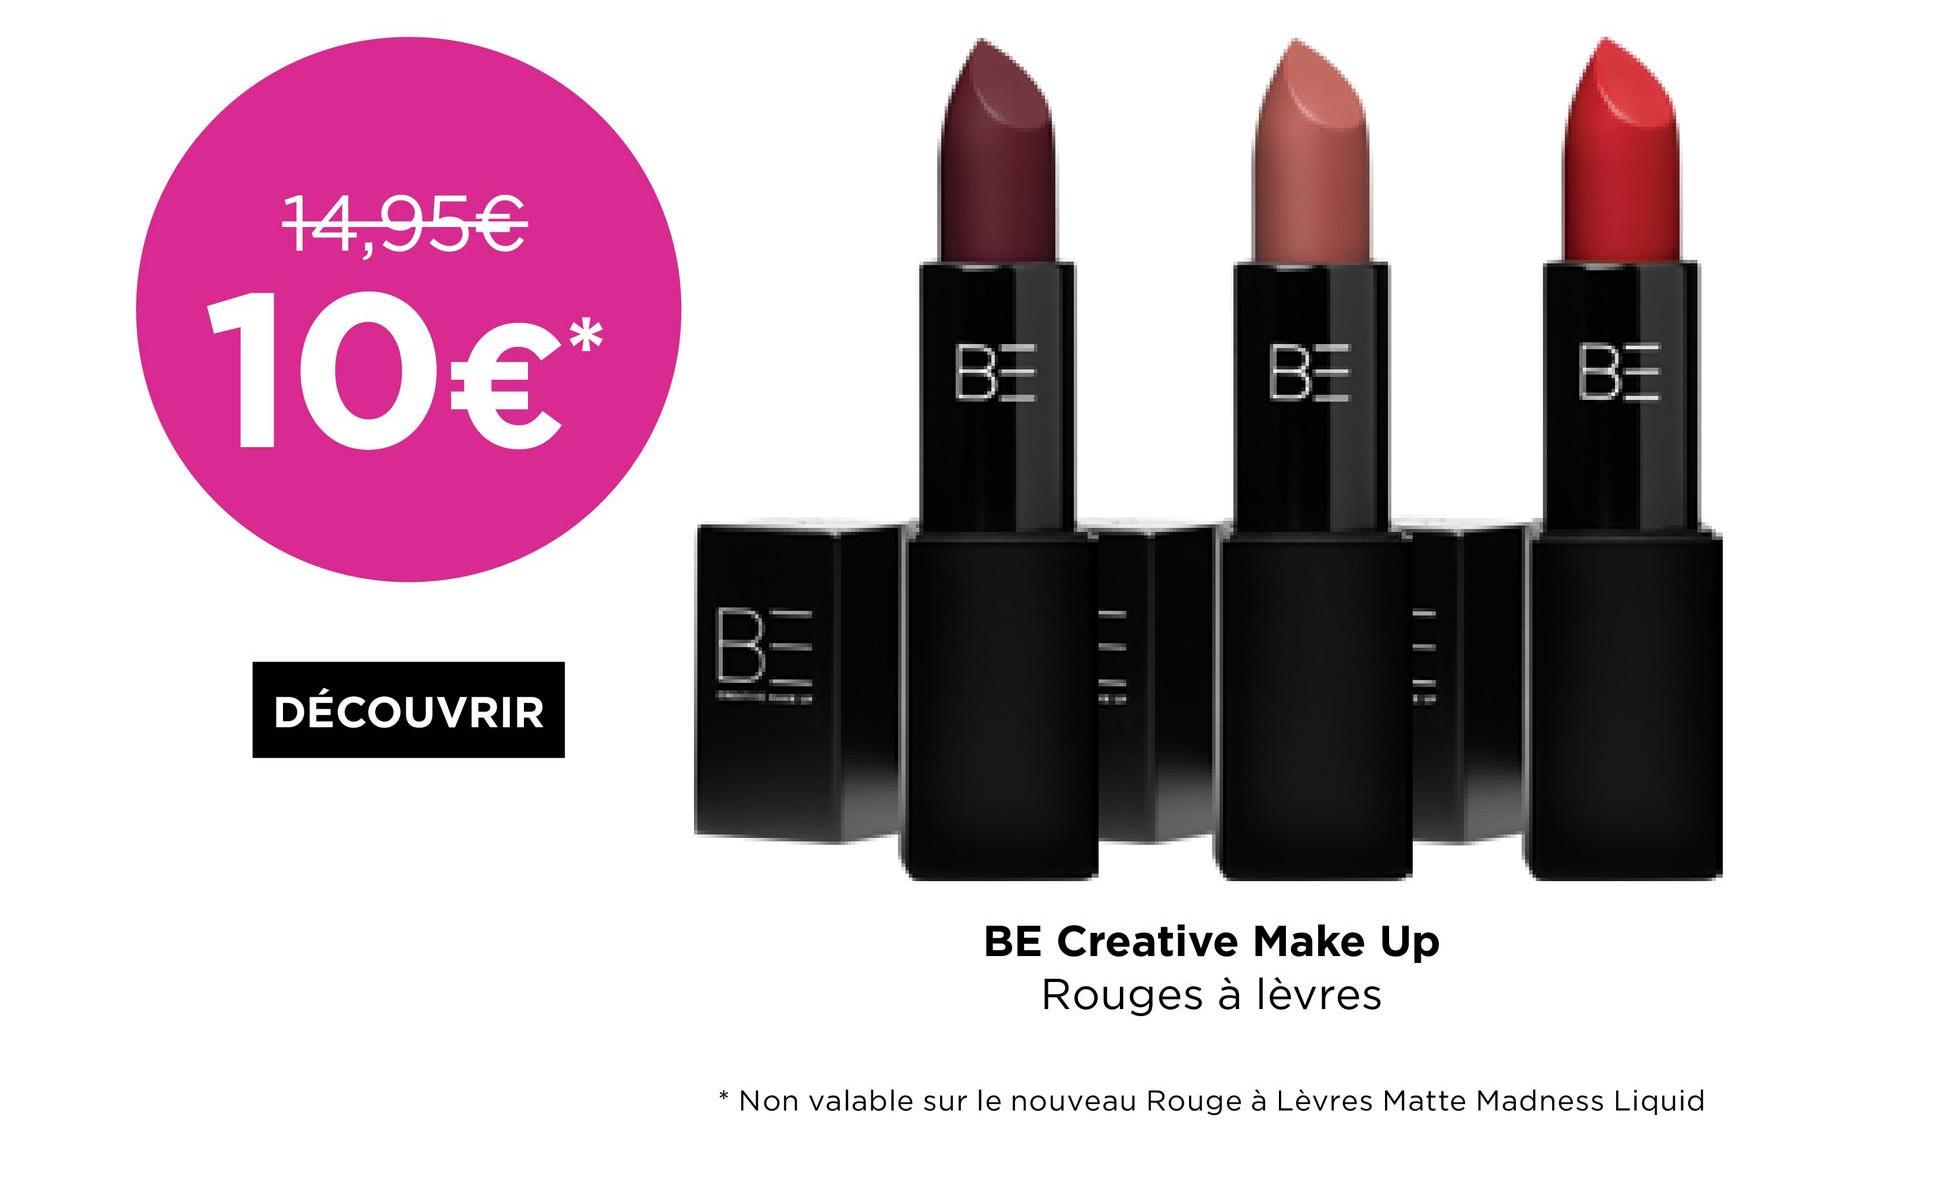 14,95€
10€*
DÉCOUVRIR
BE
BE
BE
AM
BE Creative Make Up
Rouges à lèvres
* Non valable sur le nouveau Rouge à Lèvres Matte Madness Liquid
BE
| | |!